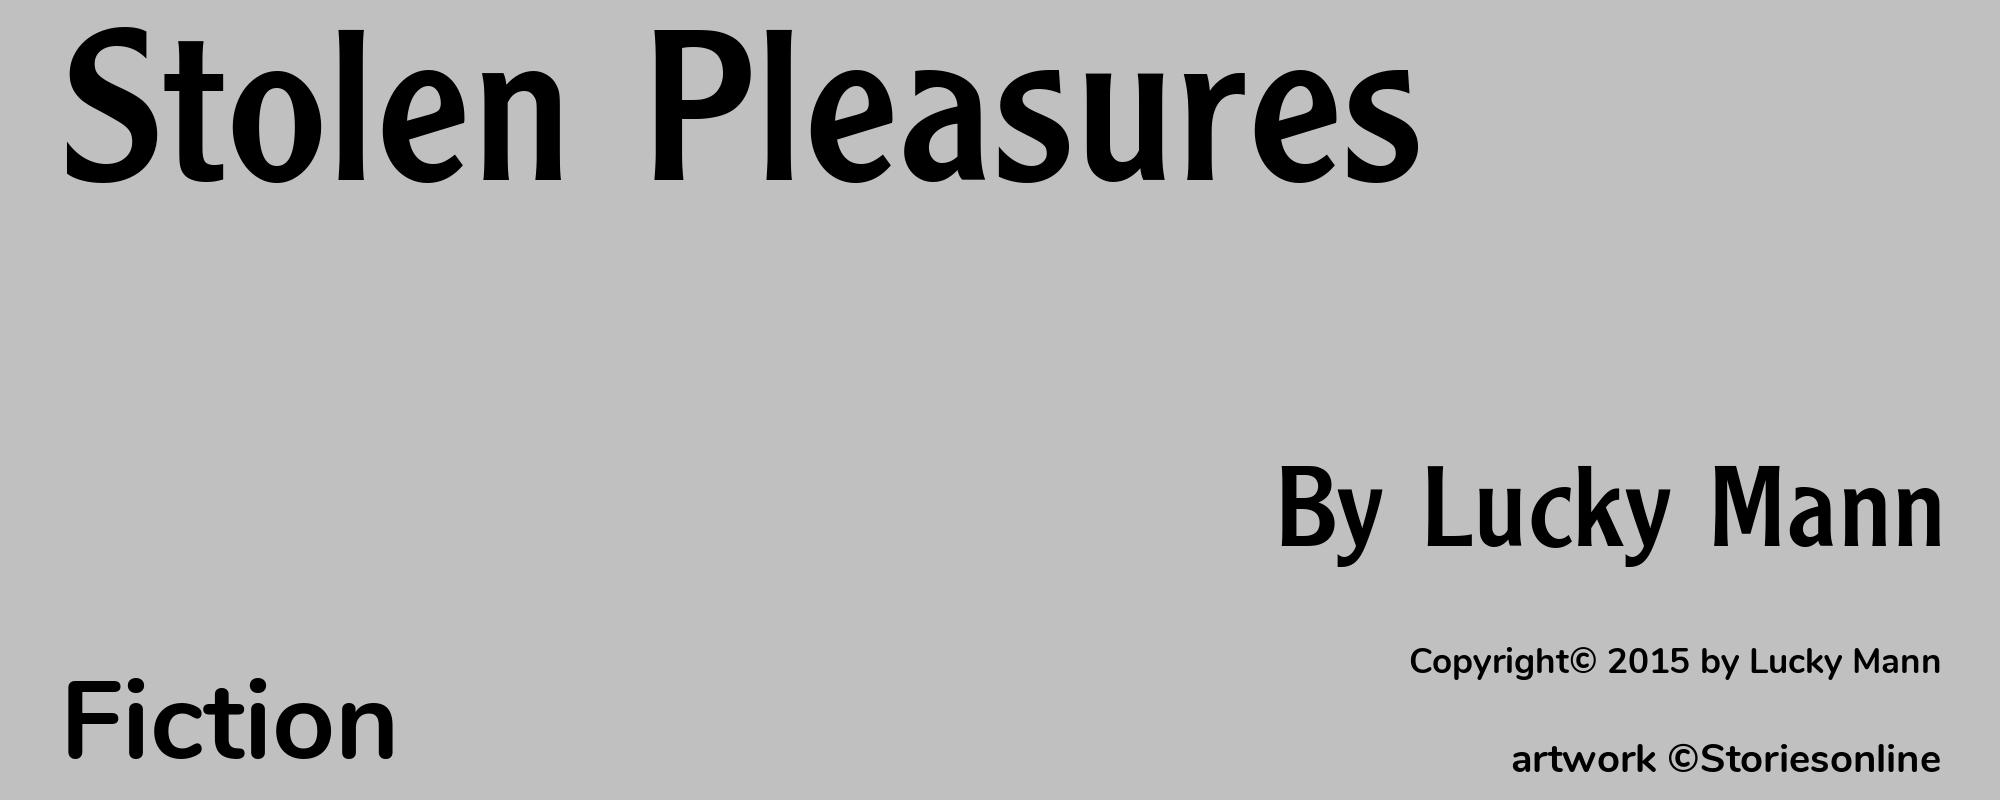 Stolen Pleasures - Cover